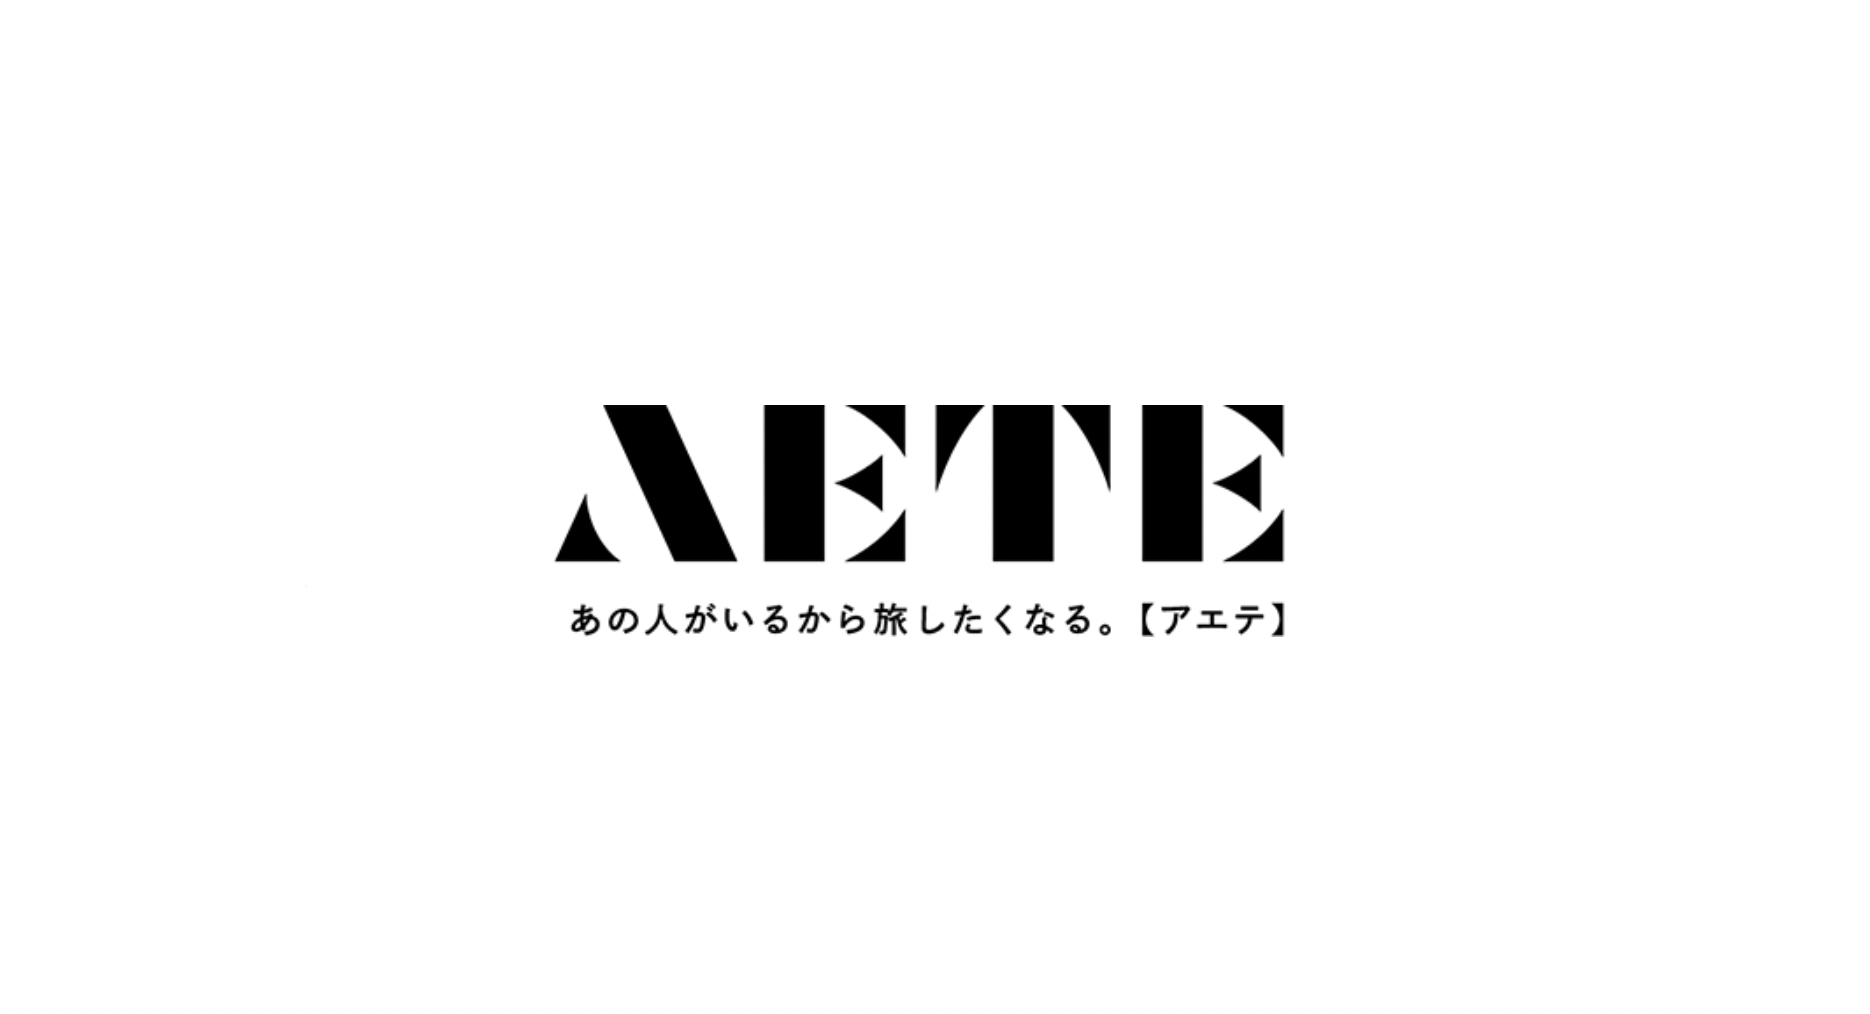 インタビュー掲載のお知らせ【2021年9月18日 / aete】